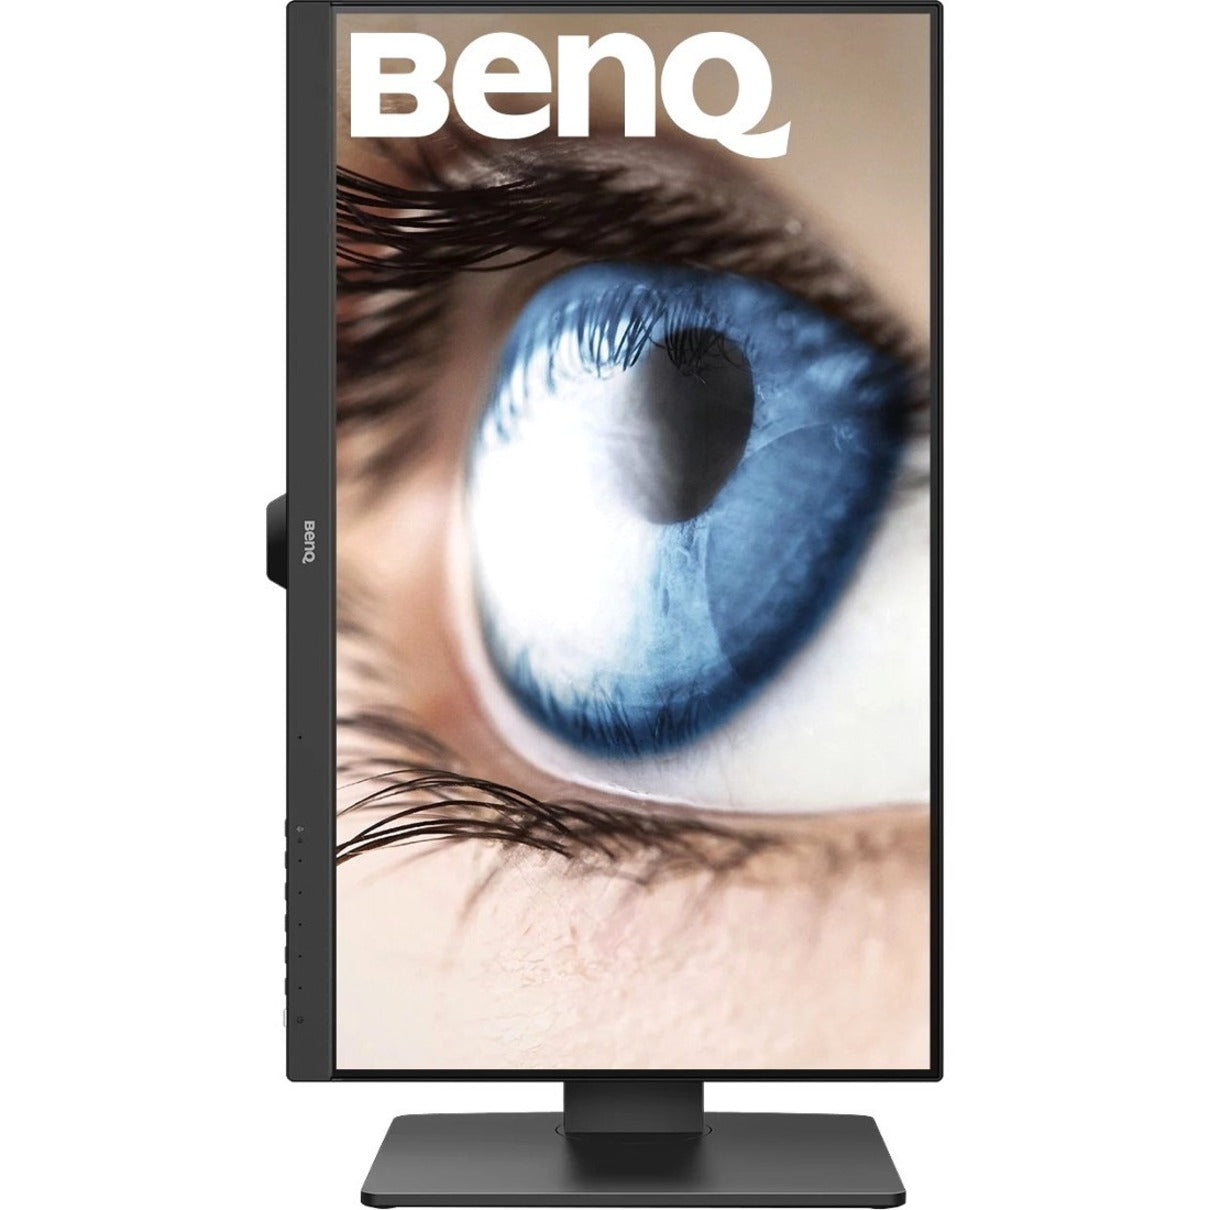 BenQ GW2785TC 27" Full HD LCD Monitor, Black - Built-in Speakers, USB/HDMI/DisplayPort Connectivity